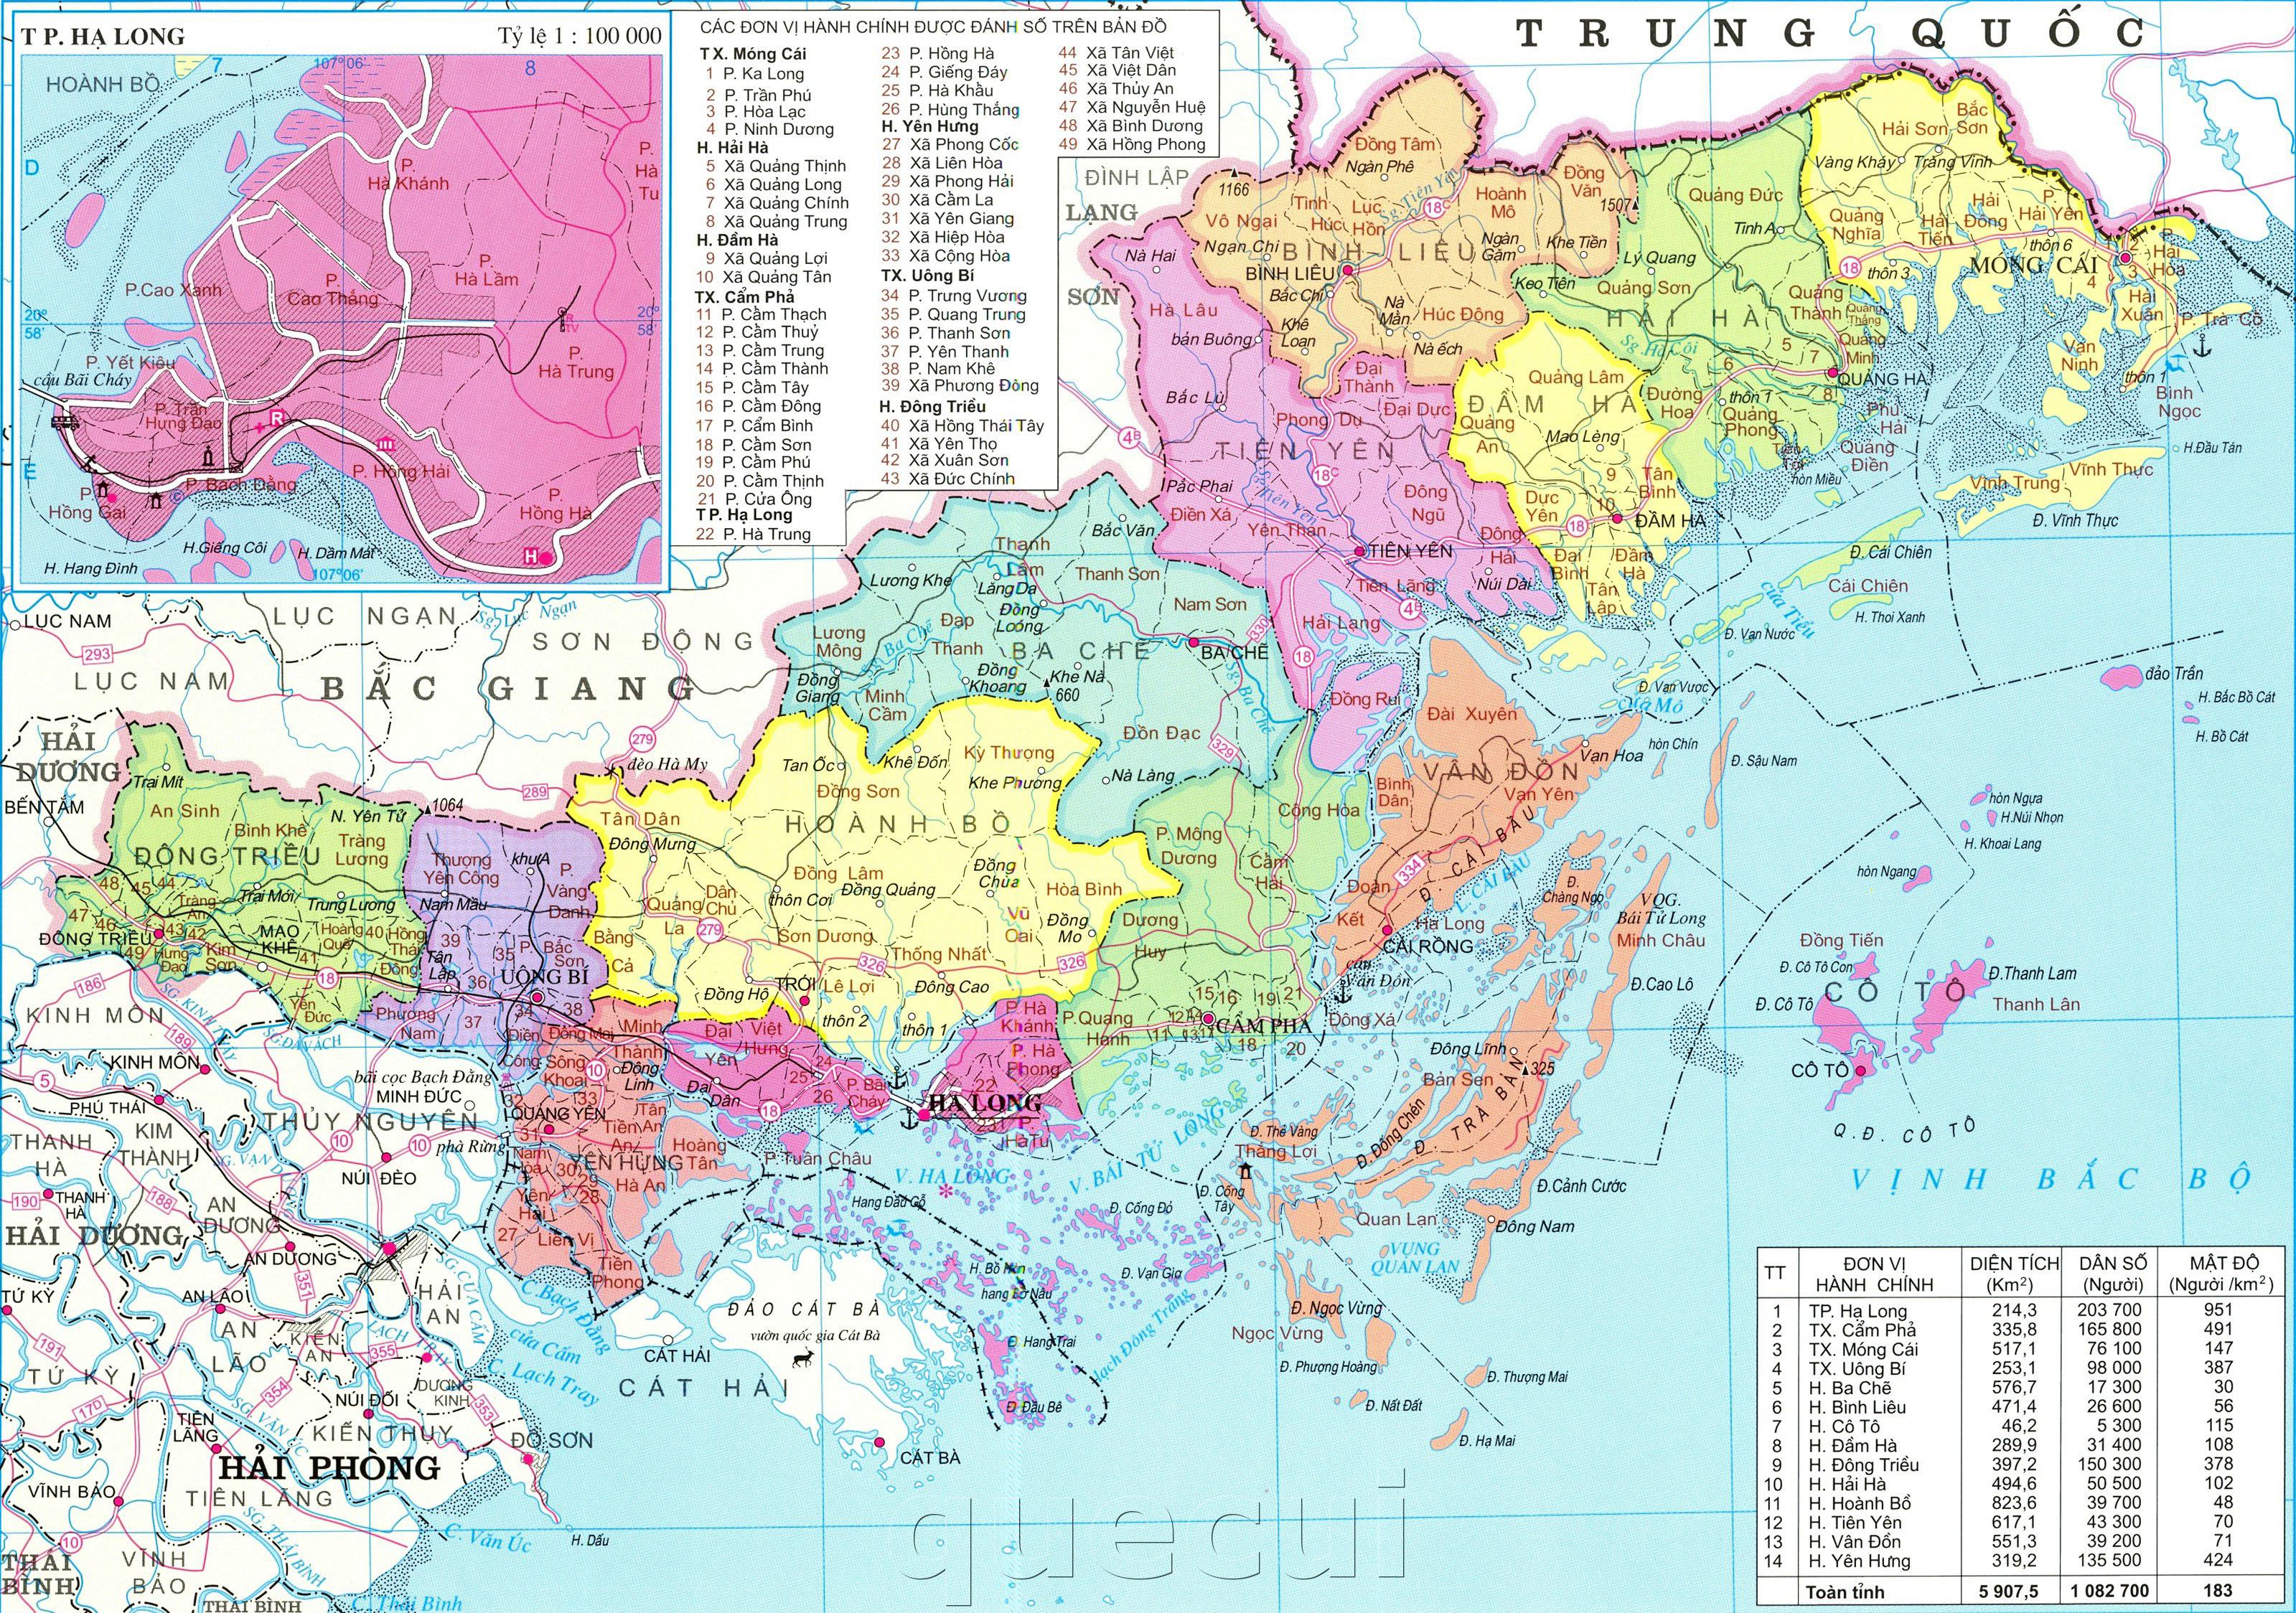 Bản đồ Quảng Ninh sẽ giúp bạn dễ dàng tìm hiểu về địa lý và cơ cấu hành chính của tỉnh này. Từ đó, bạn có thể lên kế hoạch cho chuyến đi tham quan với nhiều hoạt động thú vị.